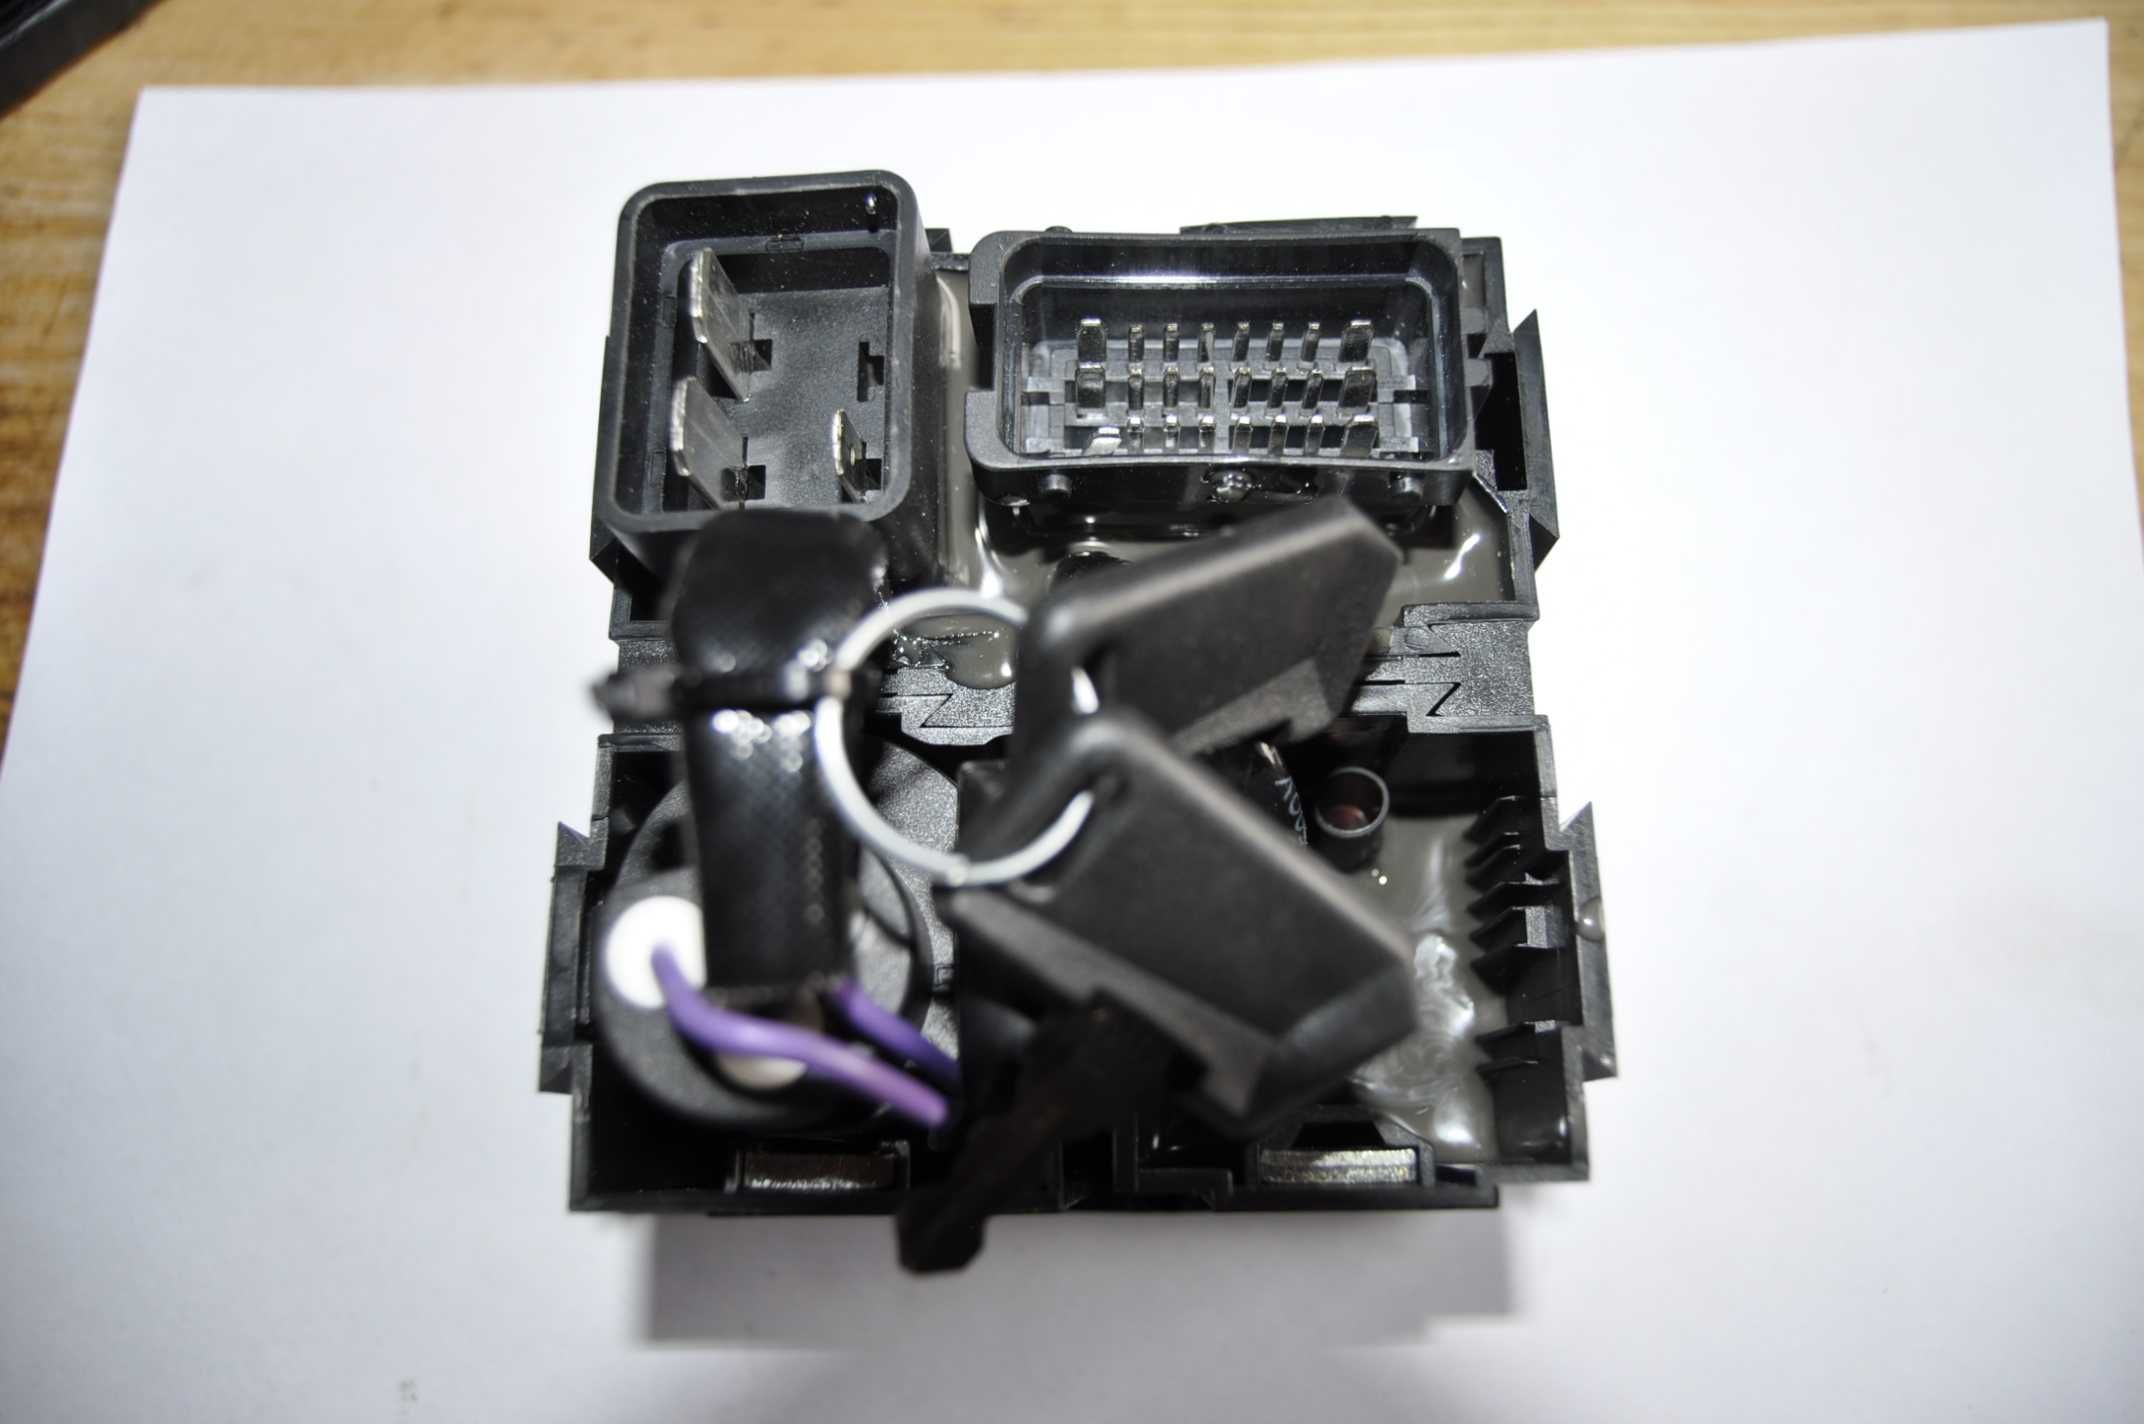 stacyjka wskażniki licznik zegar wyświetlacz agregat, kompresor